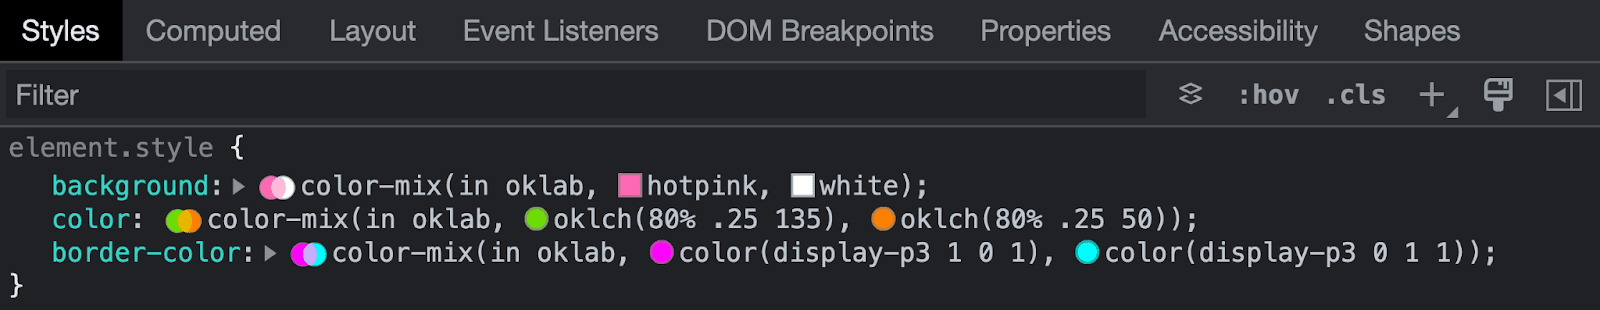 لقطة شاشة من &quot;أدوات مطوري البرامج في Chrome&quot; تفحص بنية مزيج الألوان